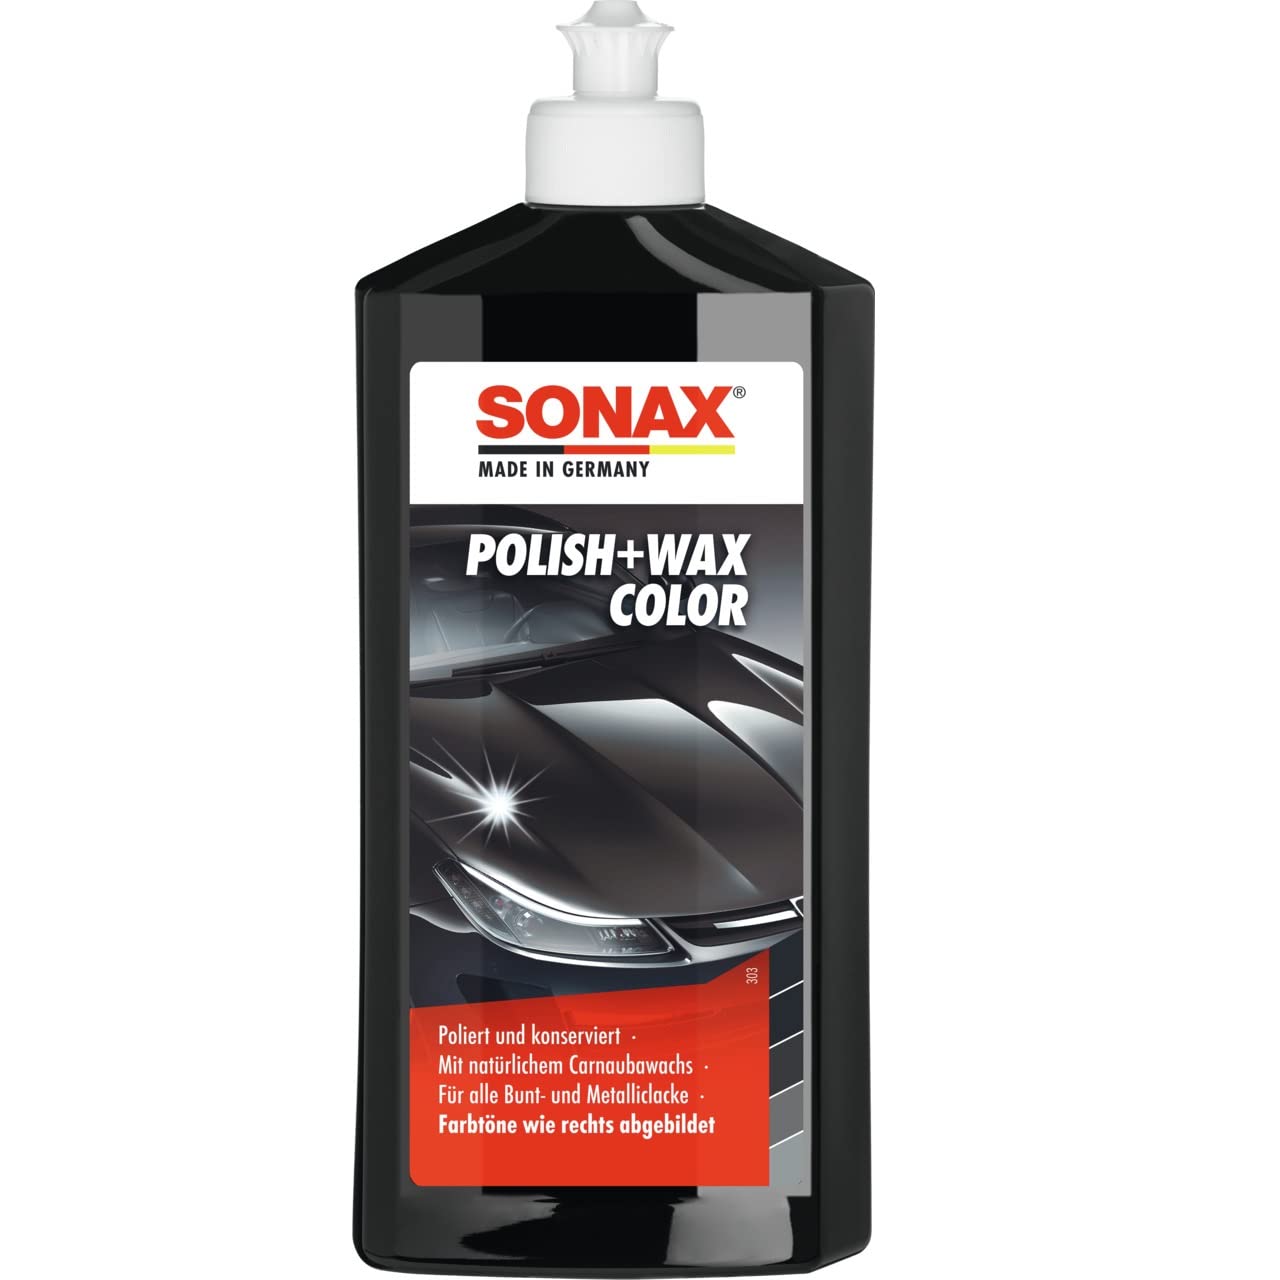 SONAX Polish+Wax Color schwarz (500 ml) Politur mit schwarzen Farbpigmenten und Wachsanteilen, Art-Nr. 02961000 von SONAX